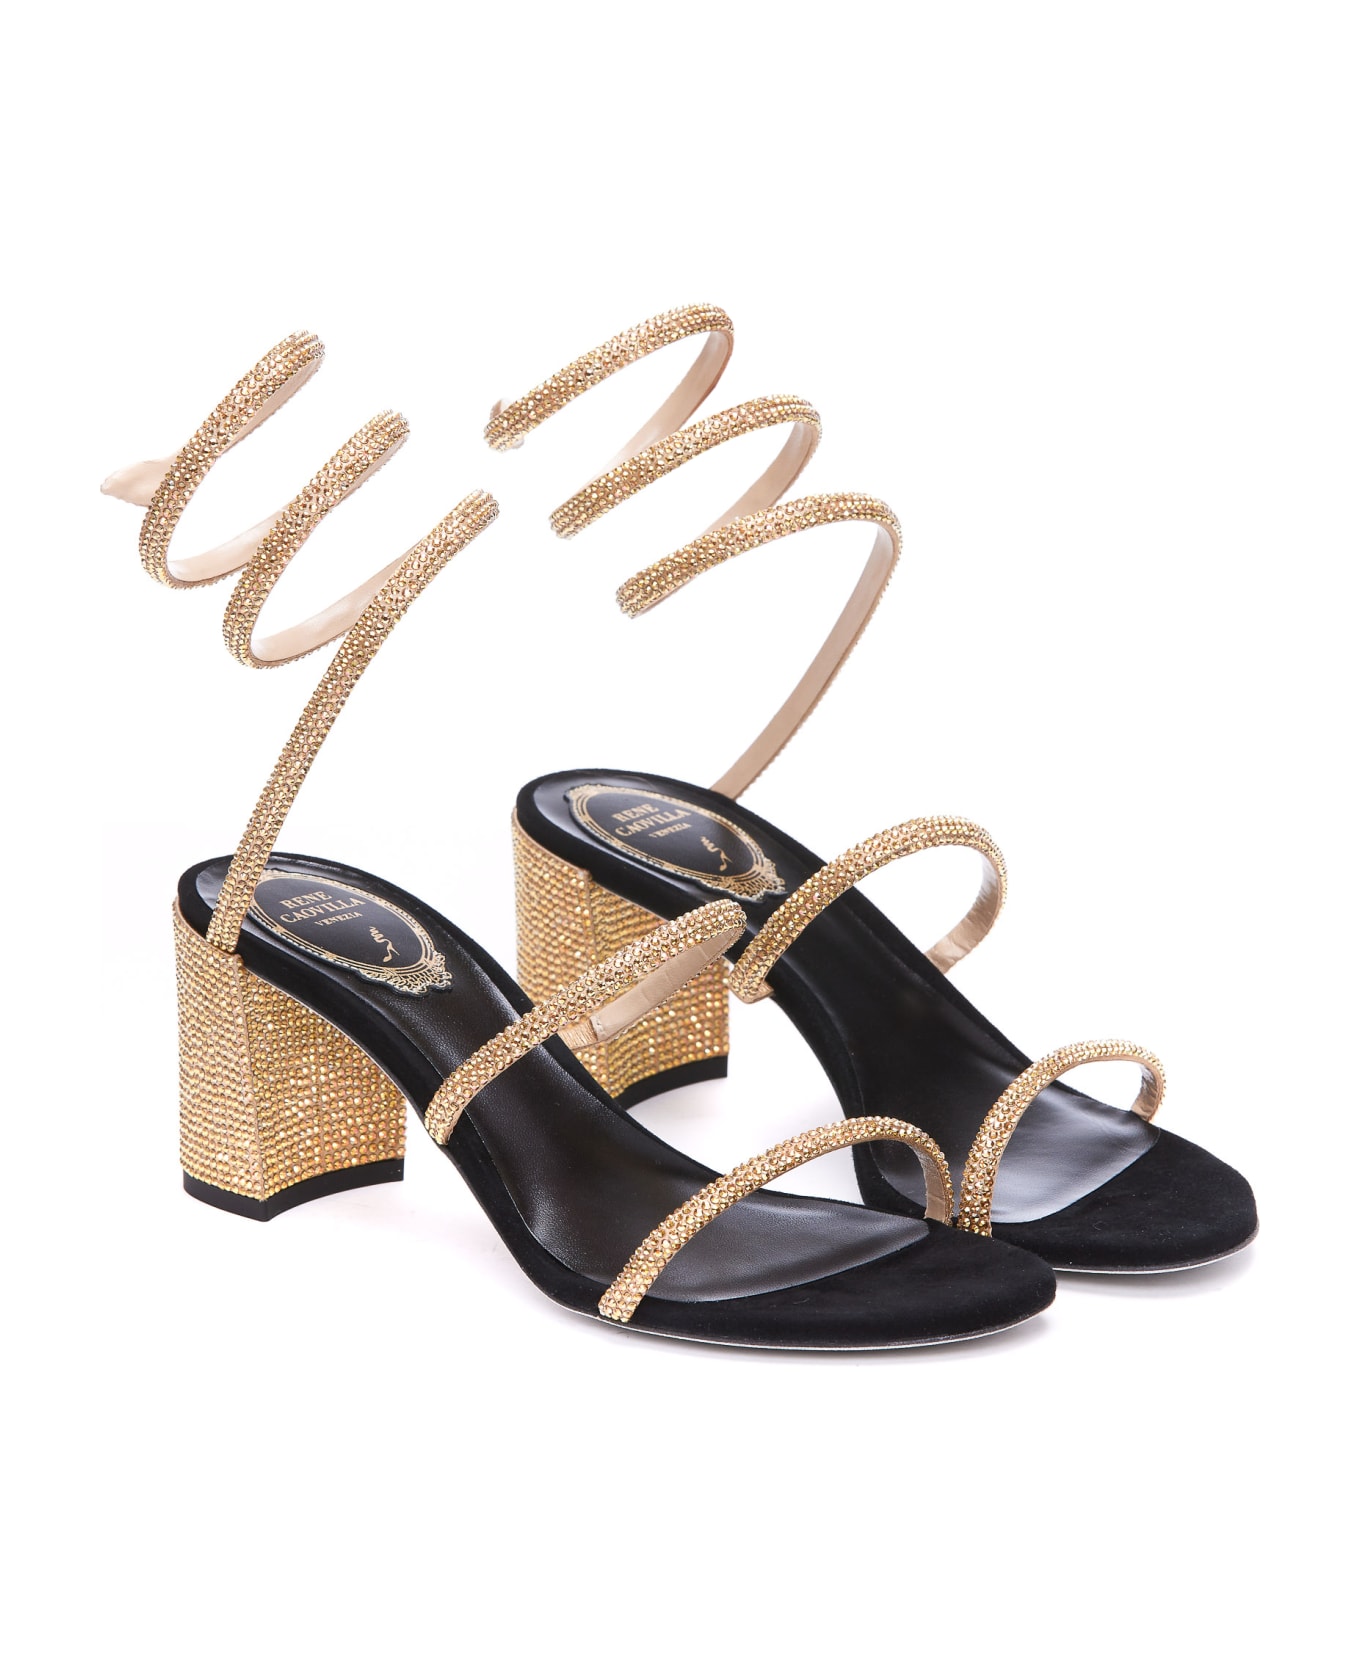 René Caovilla Cleo Pump Sandals - Golden